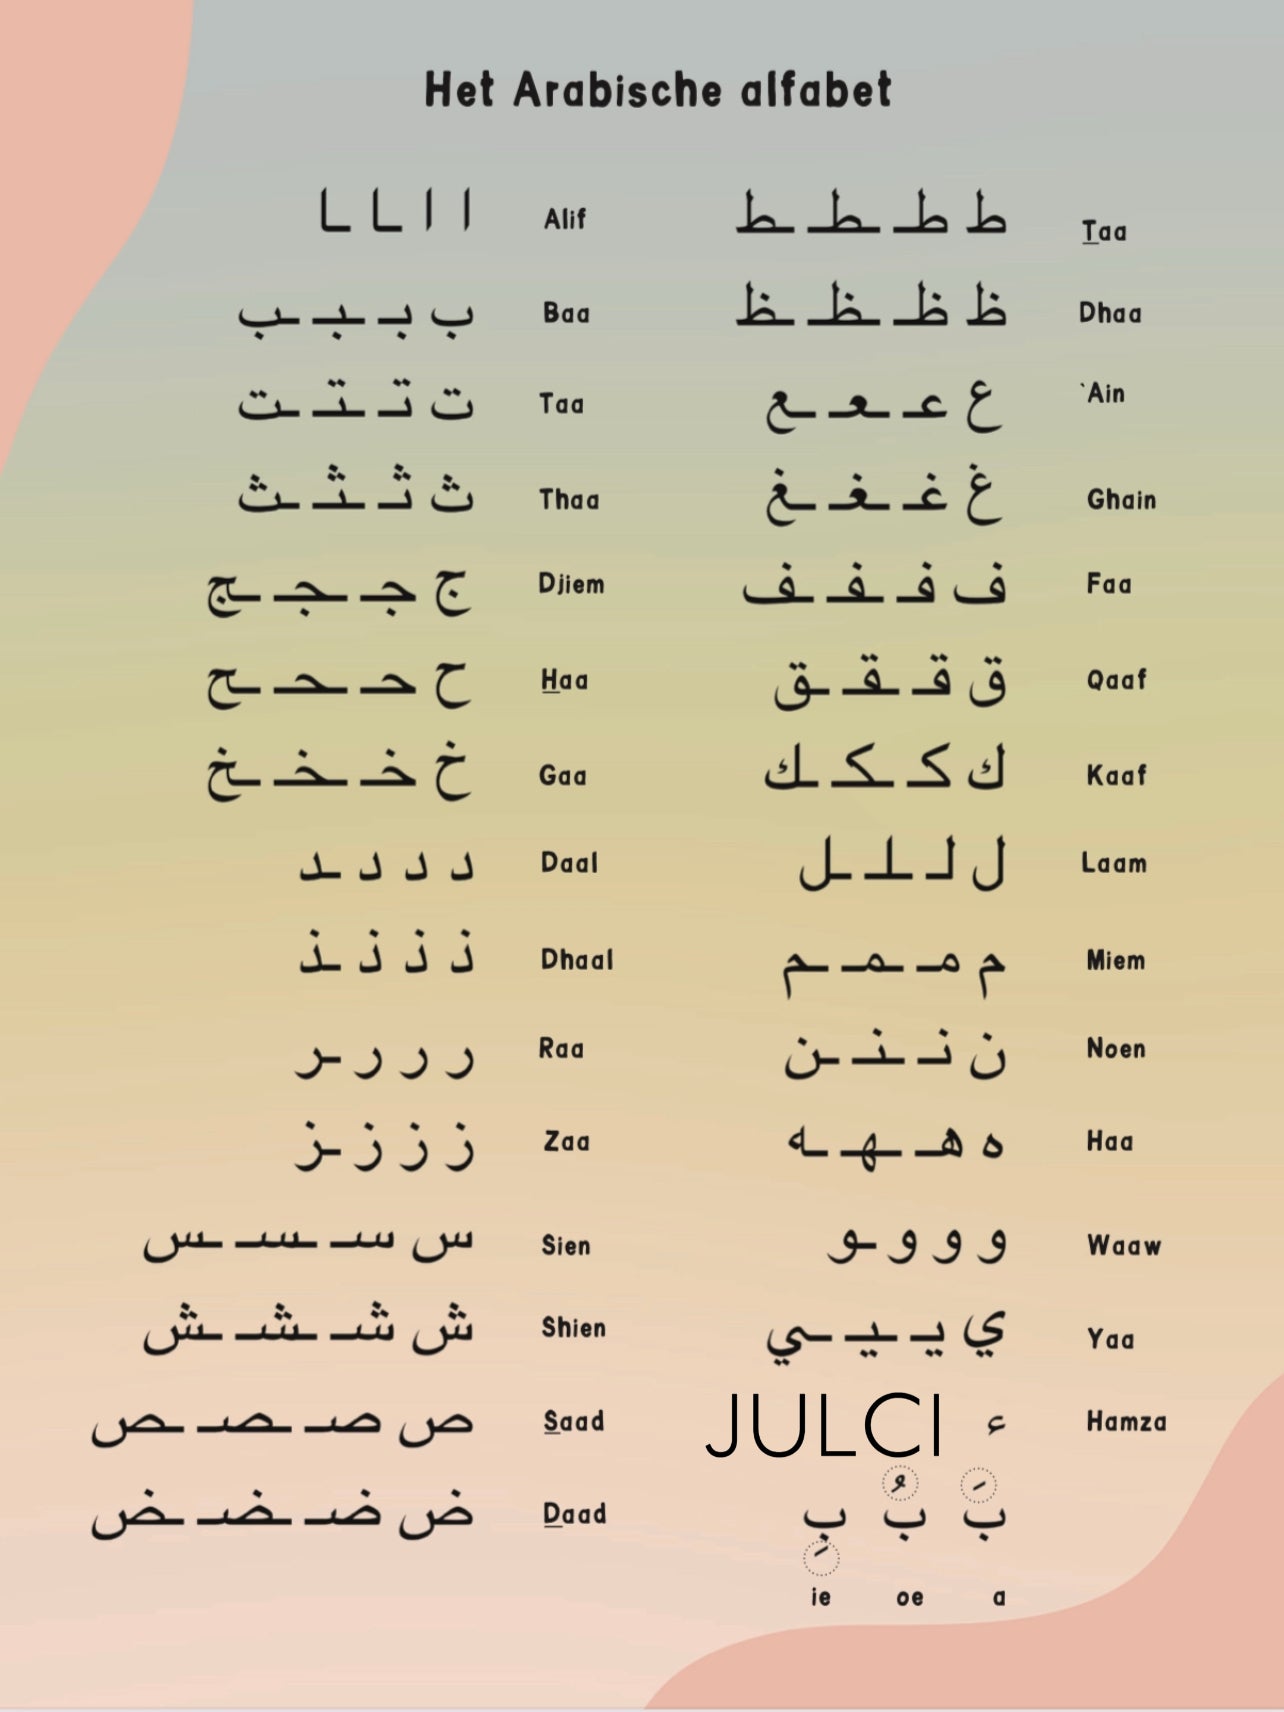 Het Arabische alfabet poster roze